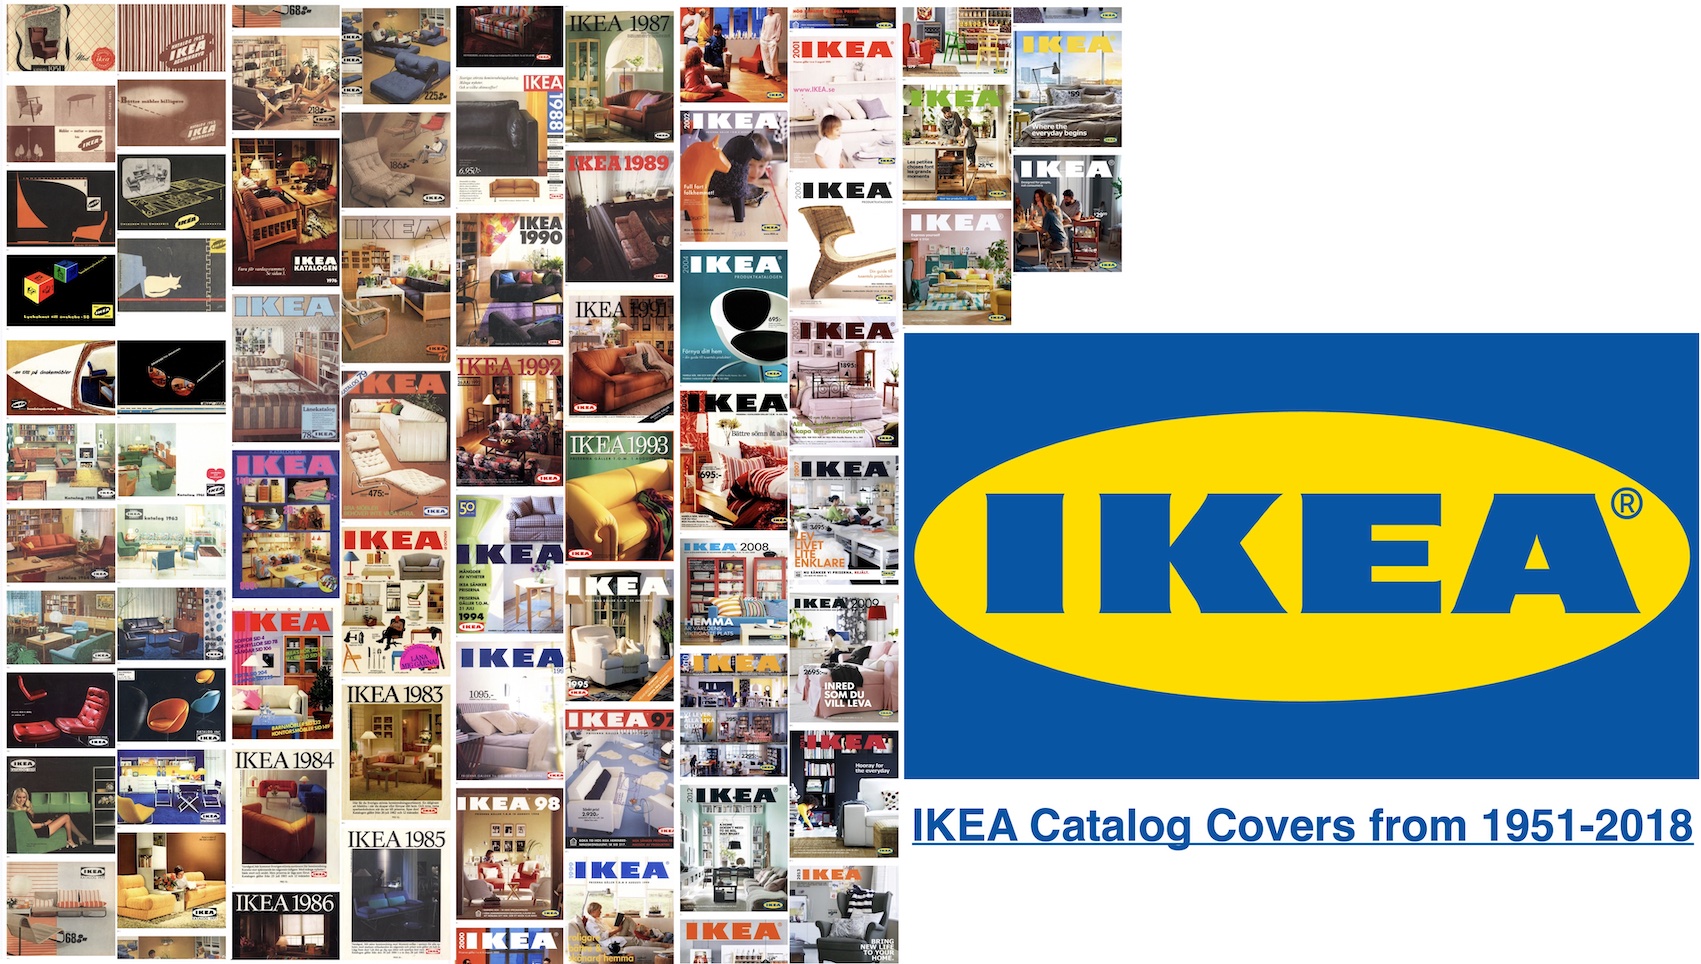 Documentando la del adiós catálogo de IKEA » Enrique